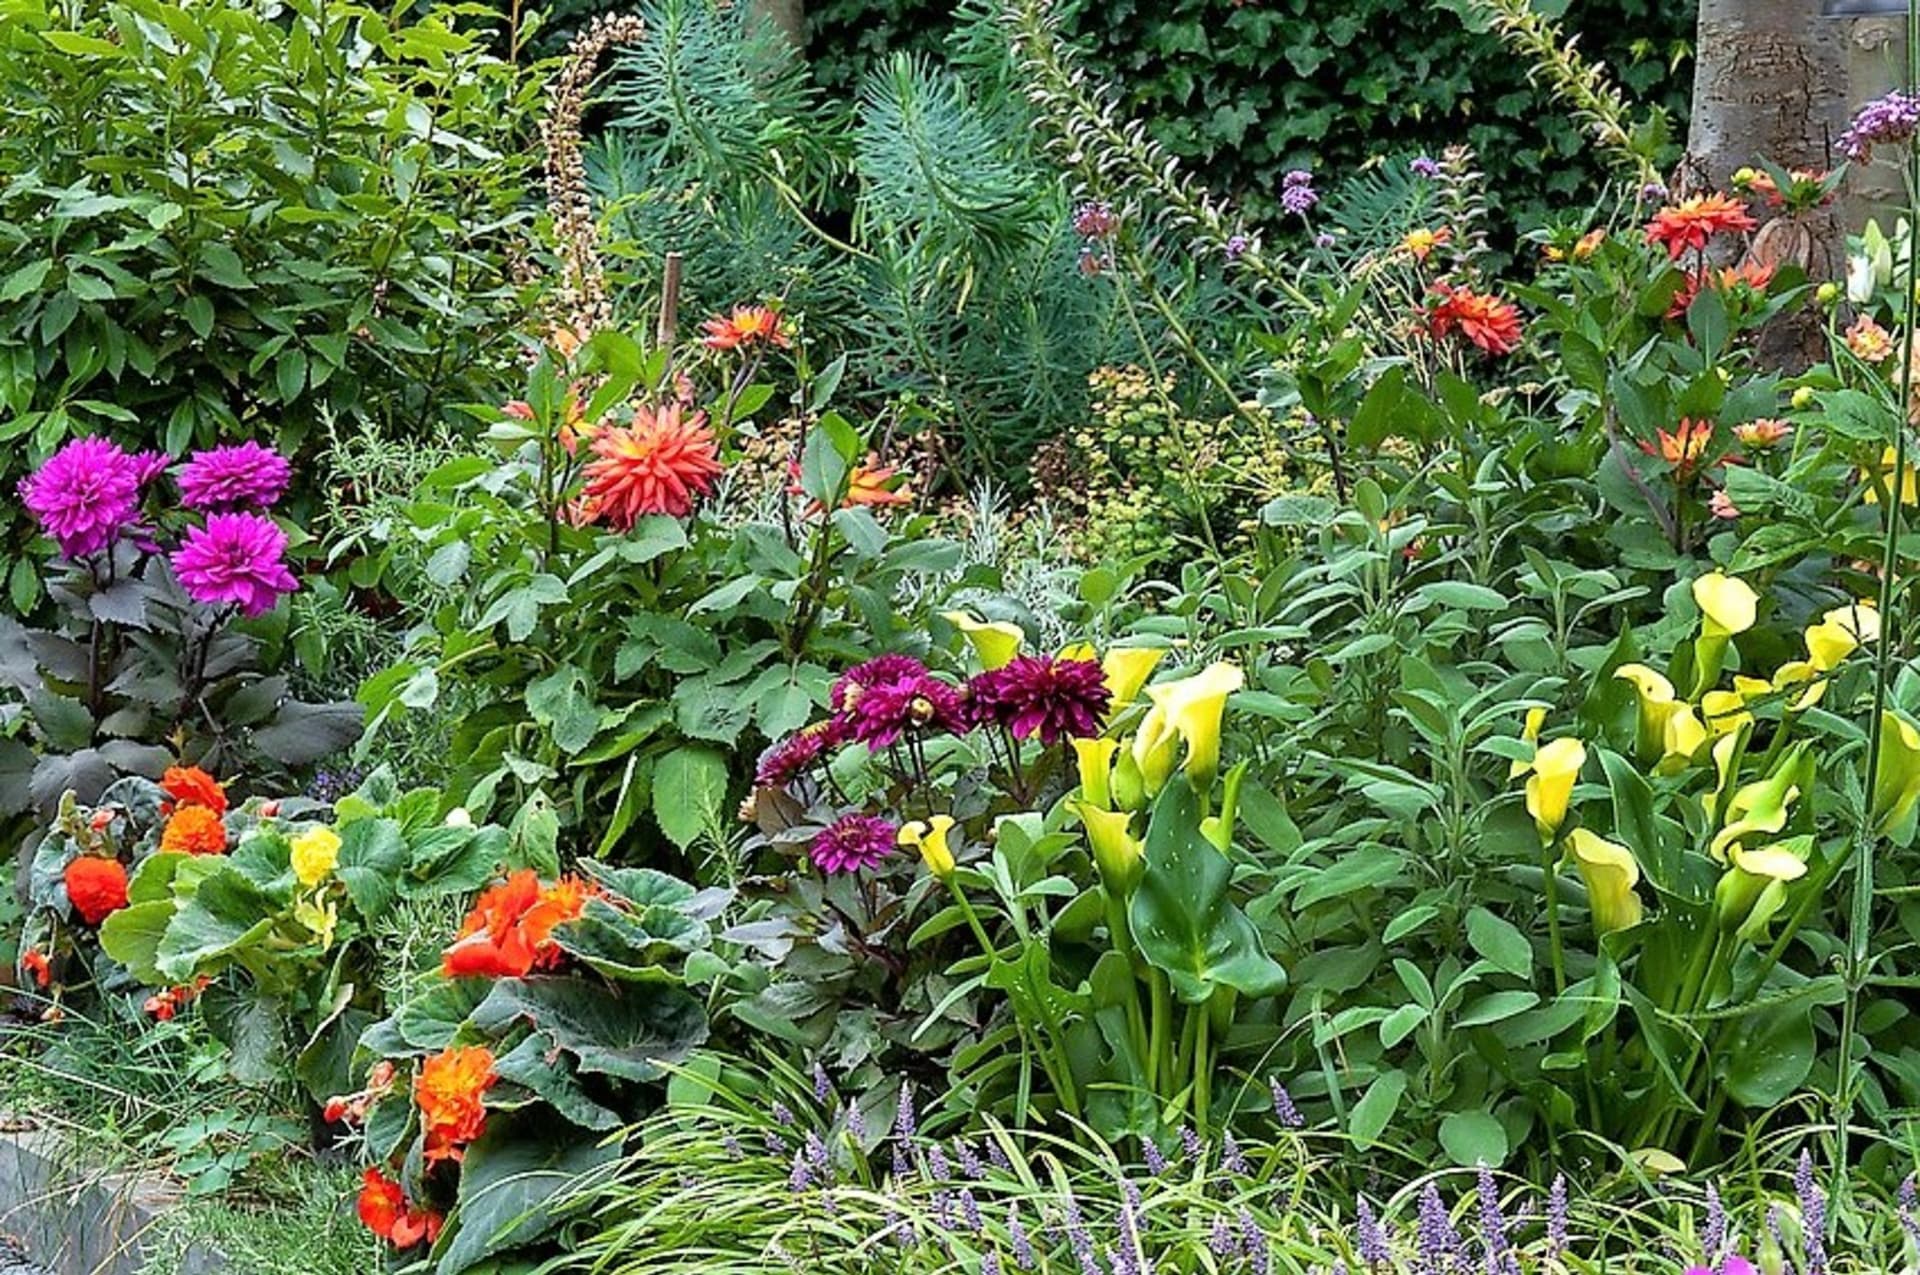 Chcete mít v létě široko daleko nejkrásnější zahradu? Pěstujte bohatě kvetoucí letní cibuloviny a hlíznaté rostliny, které vás nadchnou spoustou barevných květů a pokvetou až do podzimu!